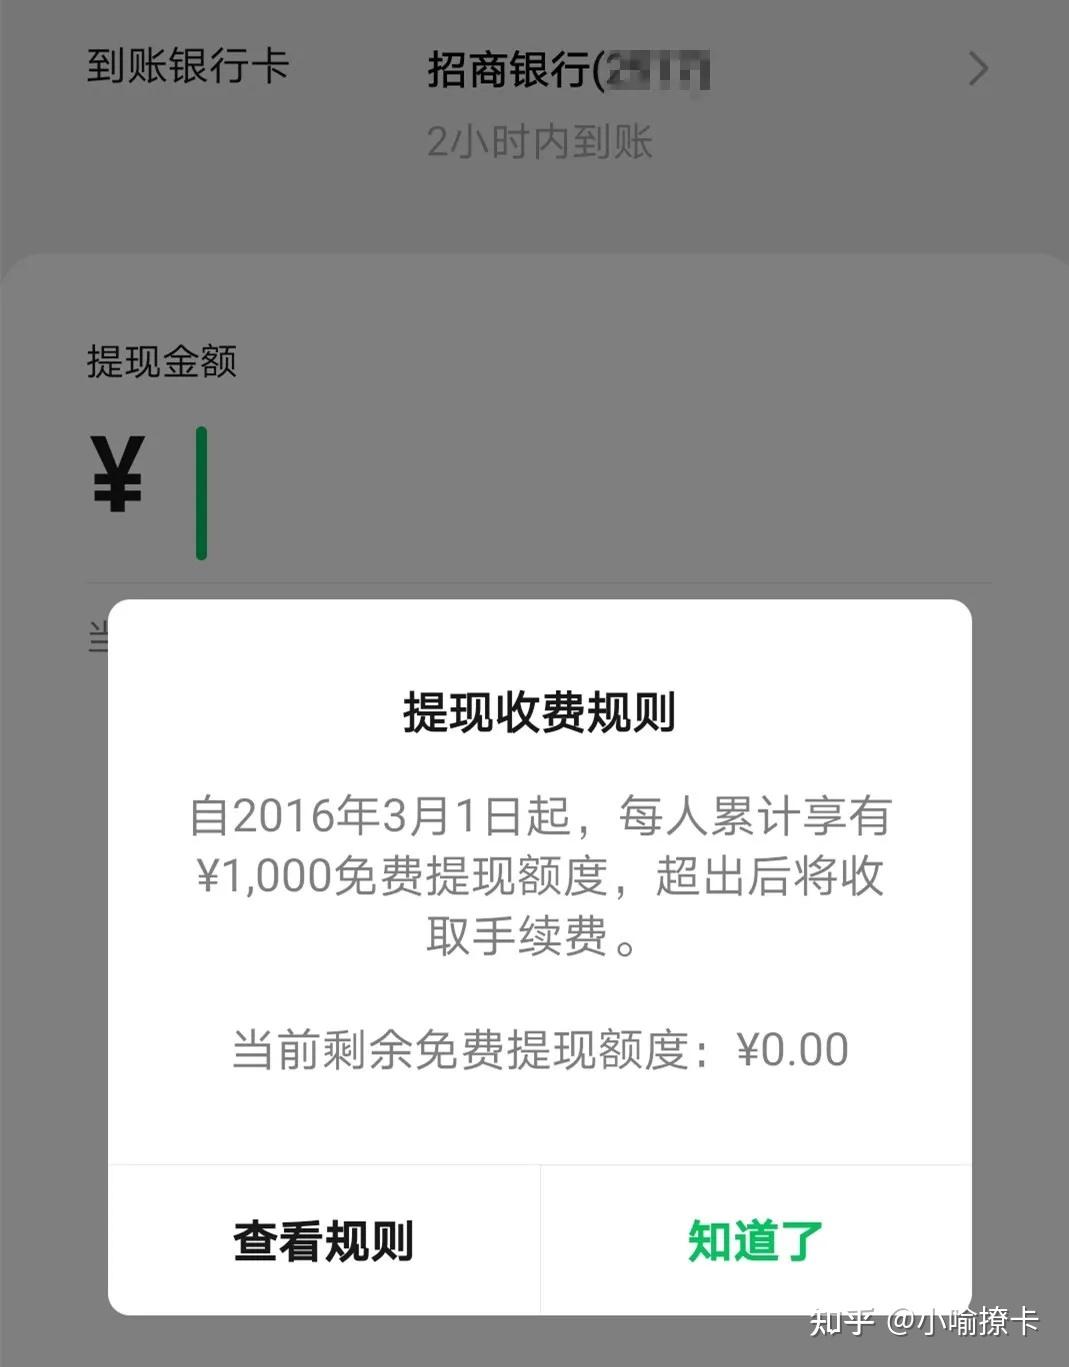 微信香港钱包WeChat Pay HK开通指南_软件应用_什么值得买